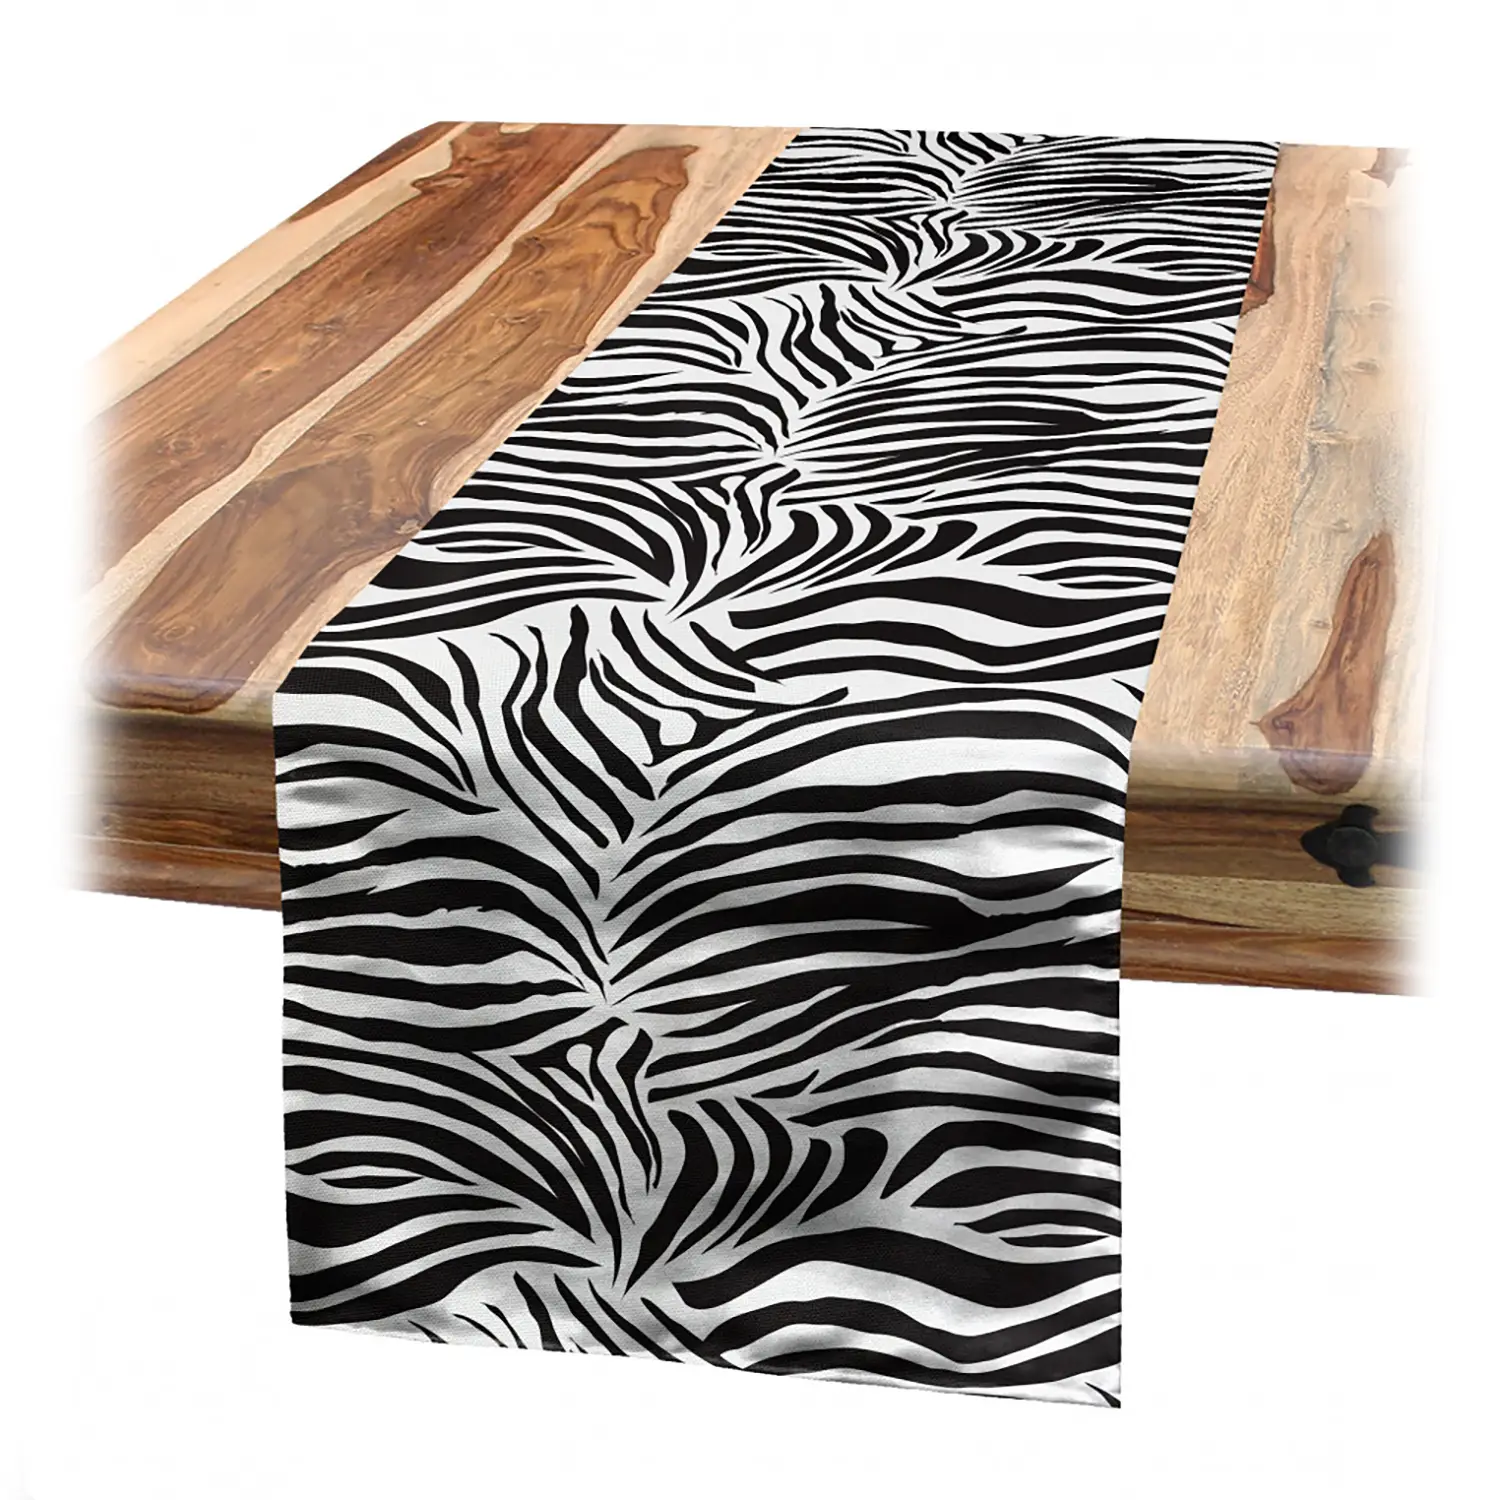 Wilde Zebra-Linien Tischl盲ufer